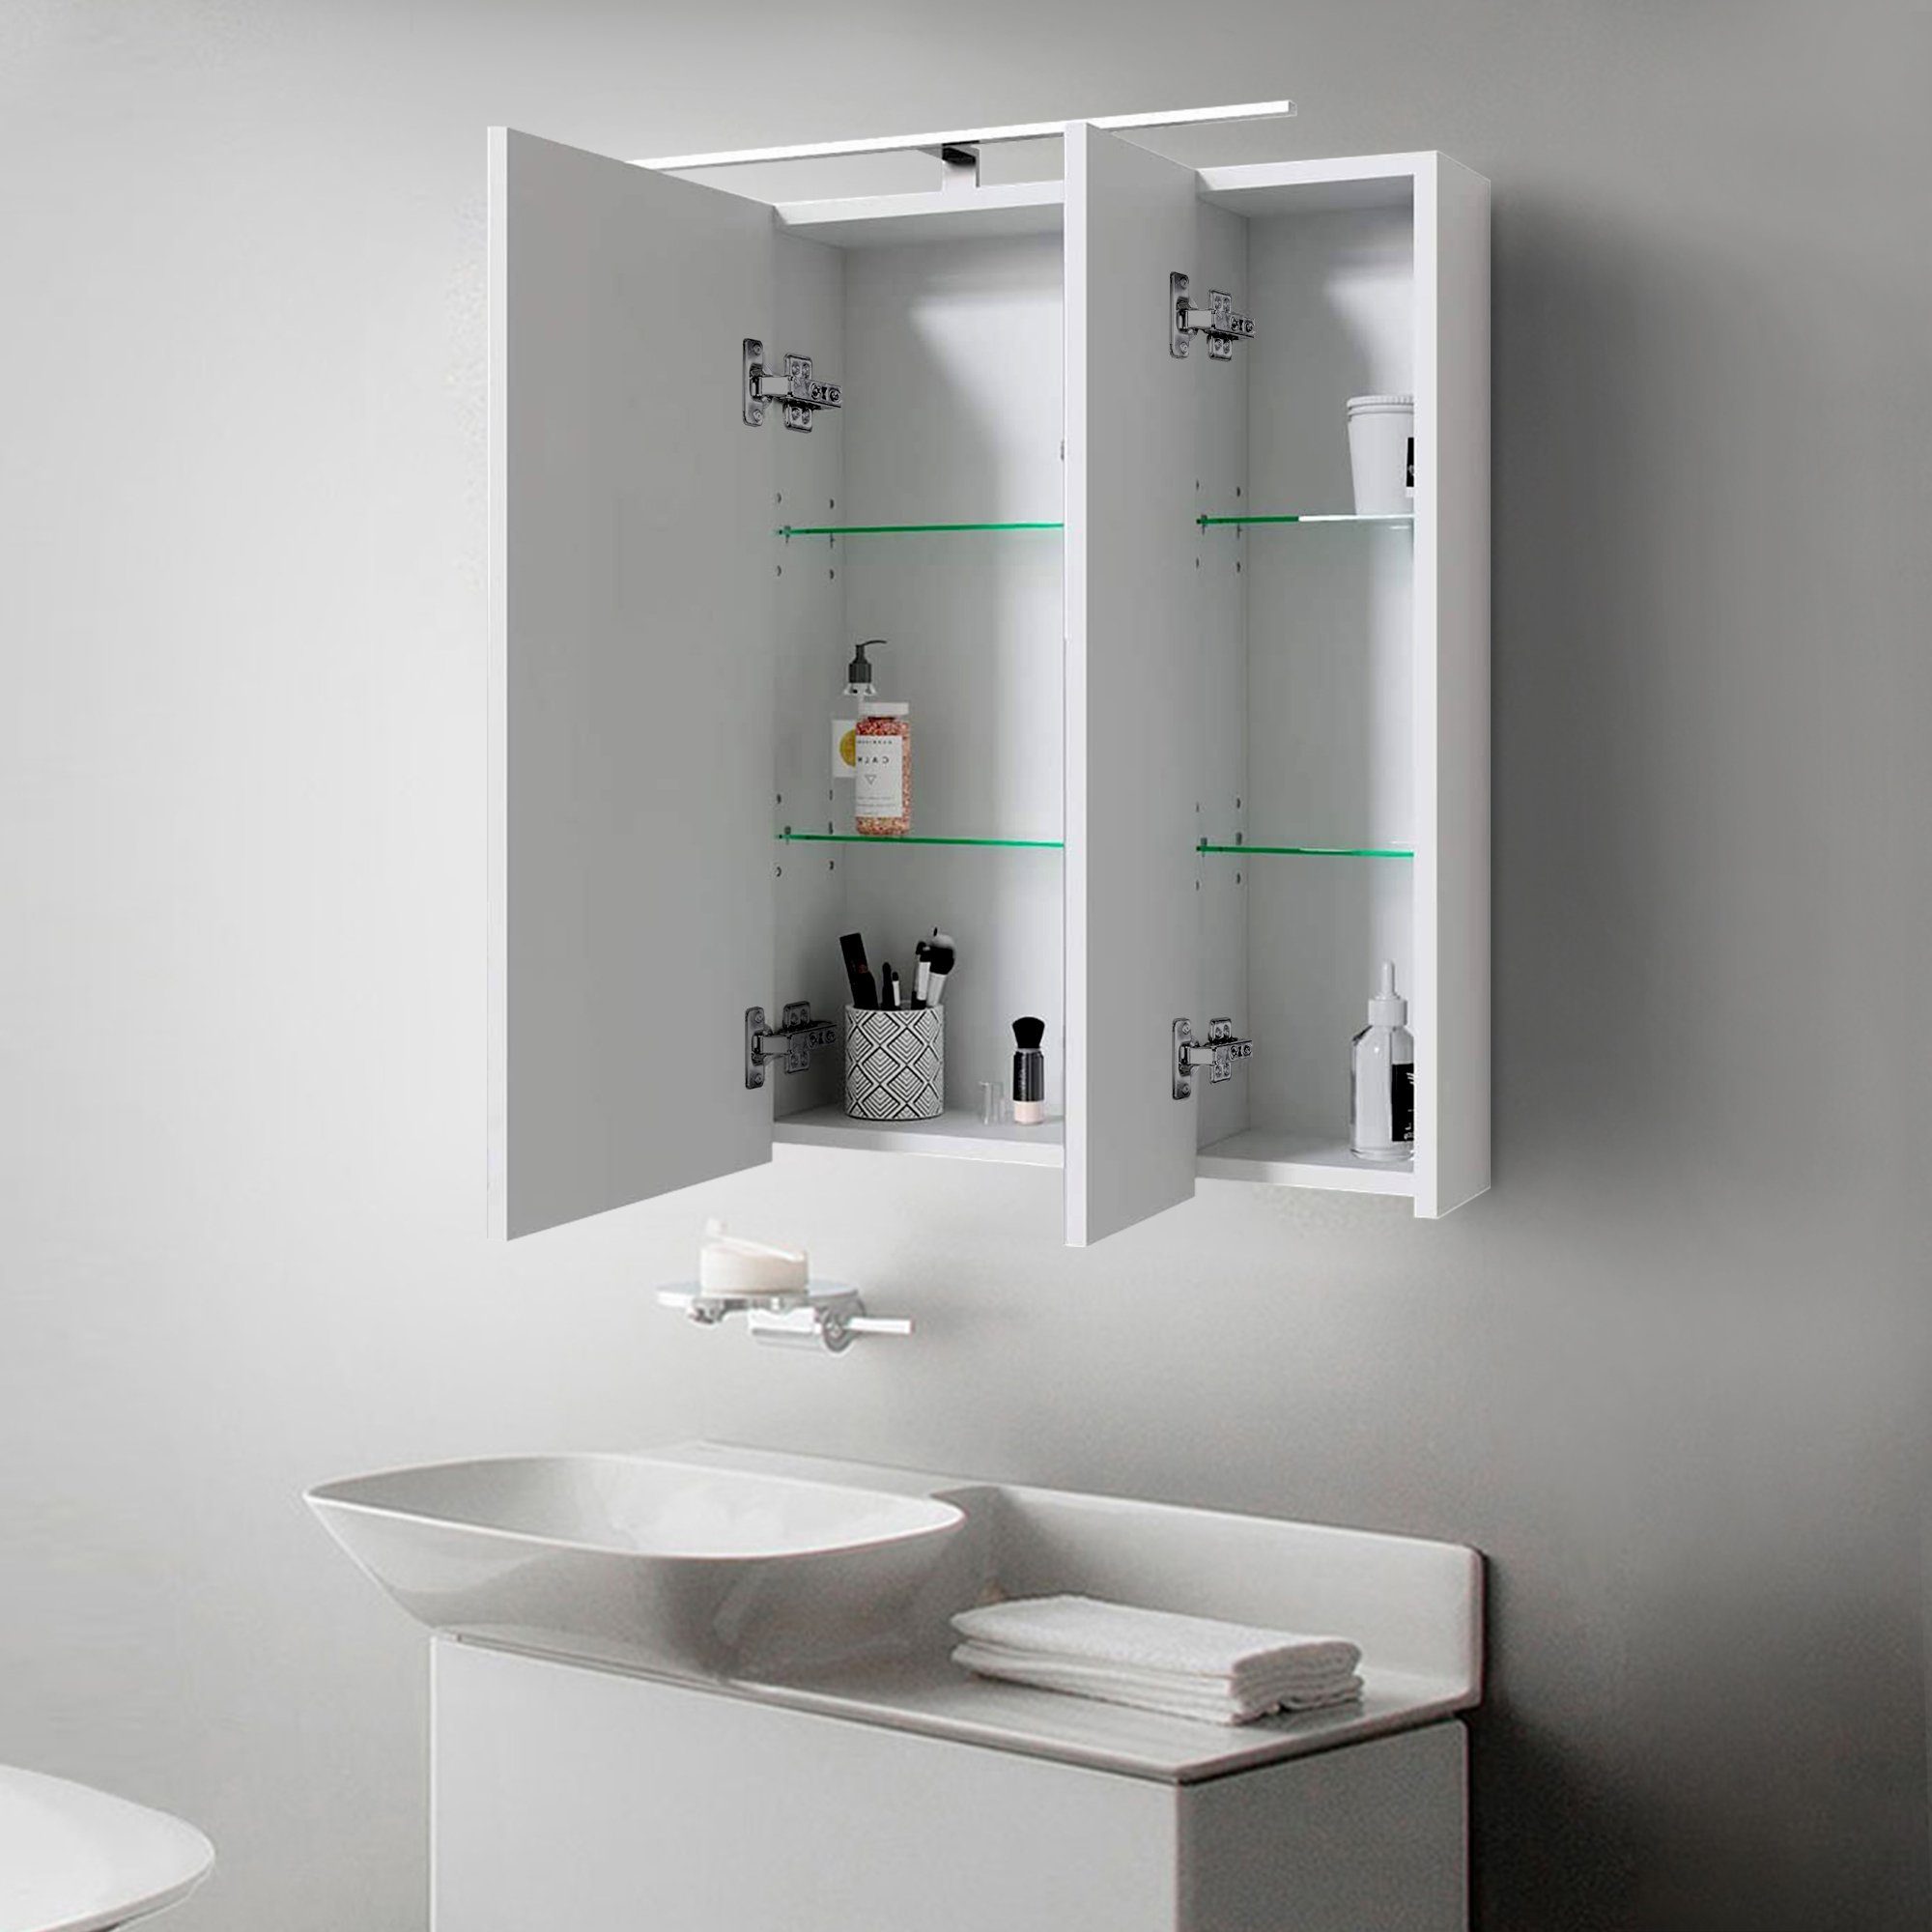 Weiß ML-DESIGN 3-Türig Badschrank Lichtschalter Beleuchtung Wandspiegel Badspiegel Steckdose LED Badezimmerspiegelschrank Badezimmerschrank 724x72x15cm